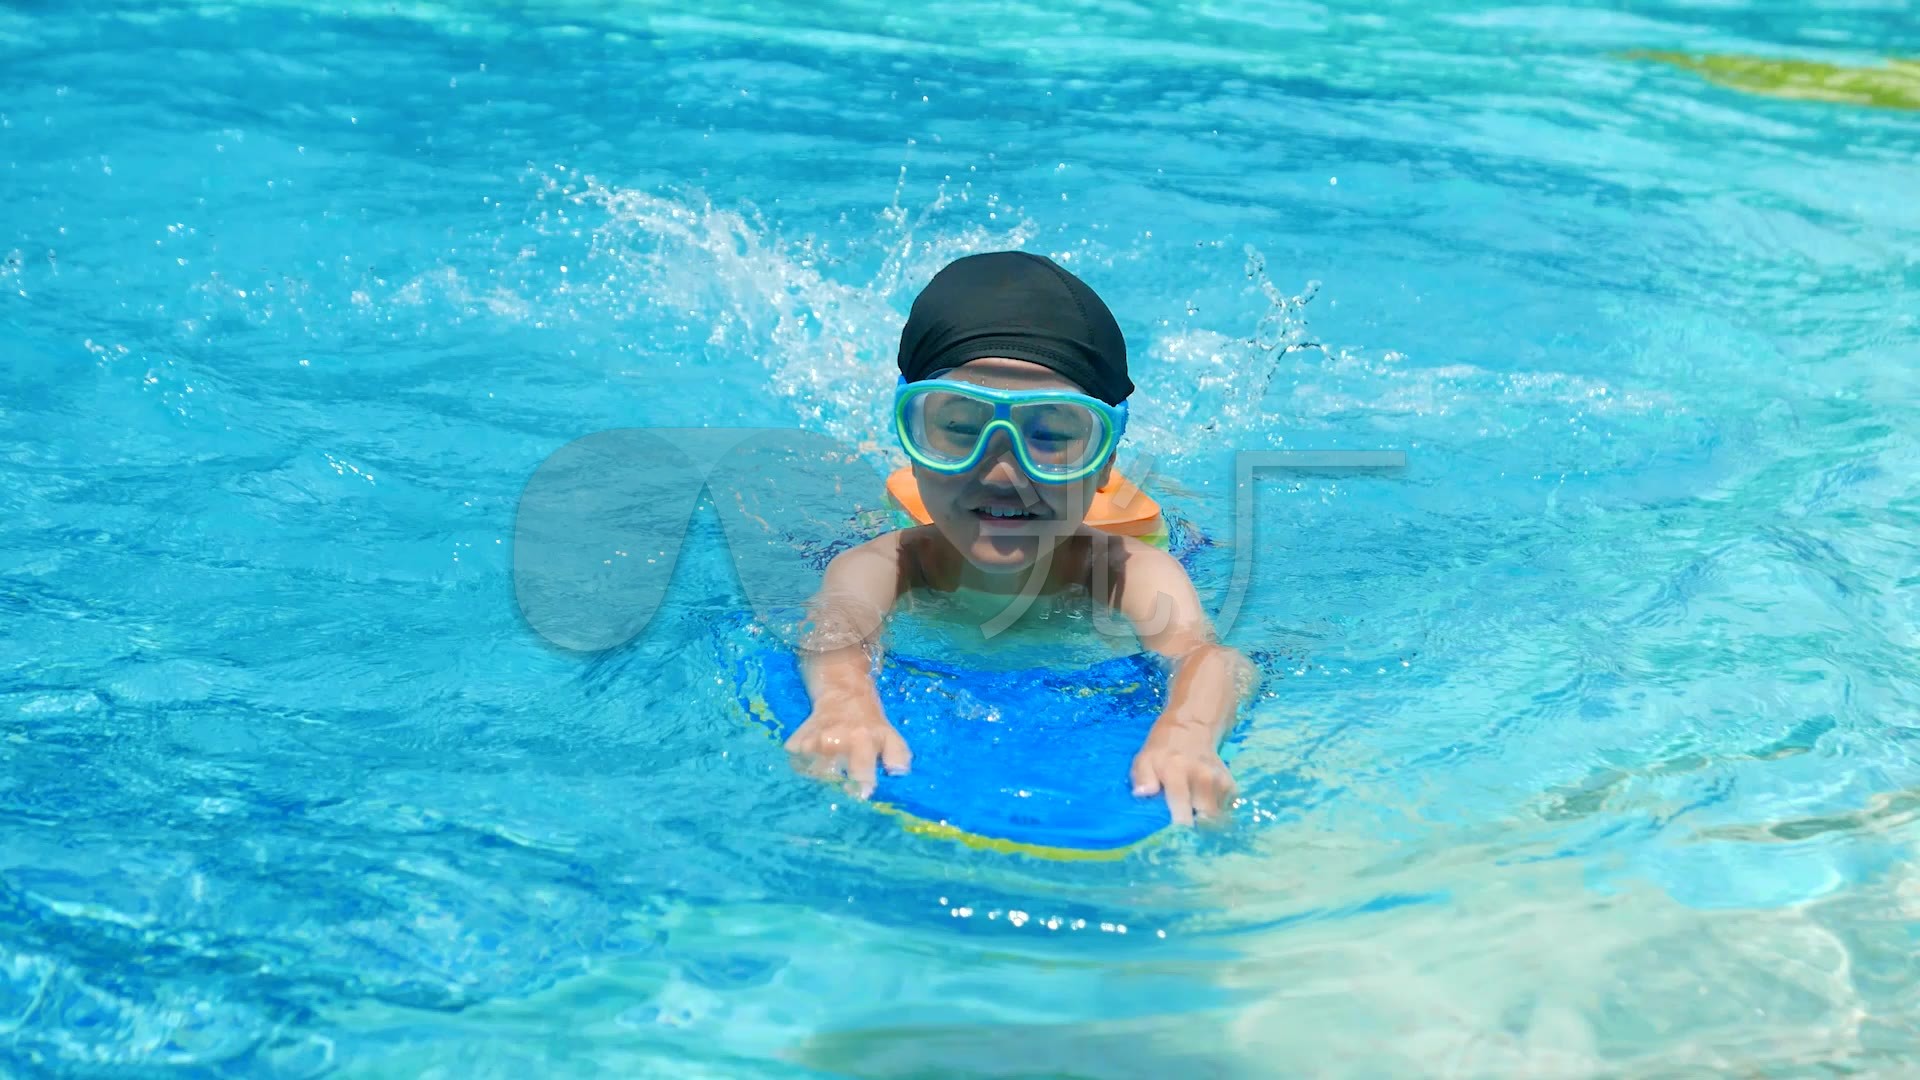 游泳池为水滑道的孩子滑在aquapark 库存图片. 图片 包括有 享用, 蓝色, 坠子, 夏天, 水道 - 88852081